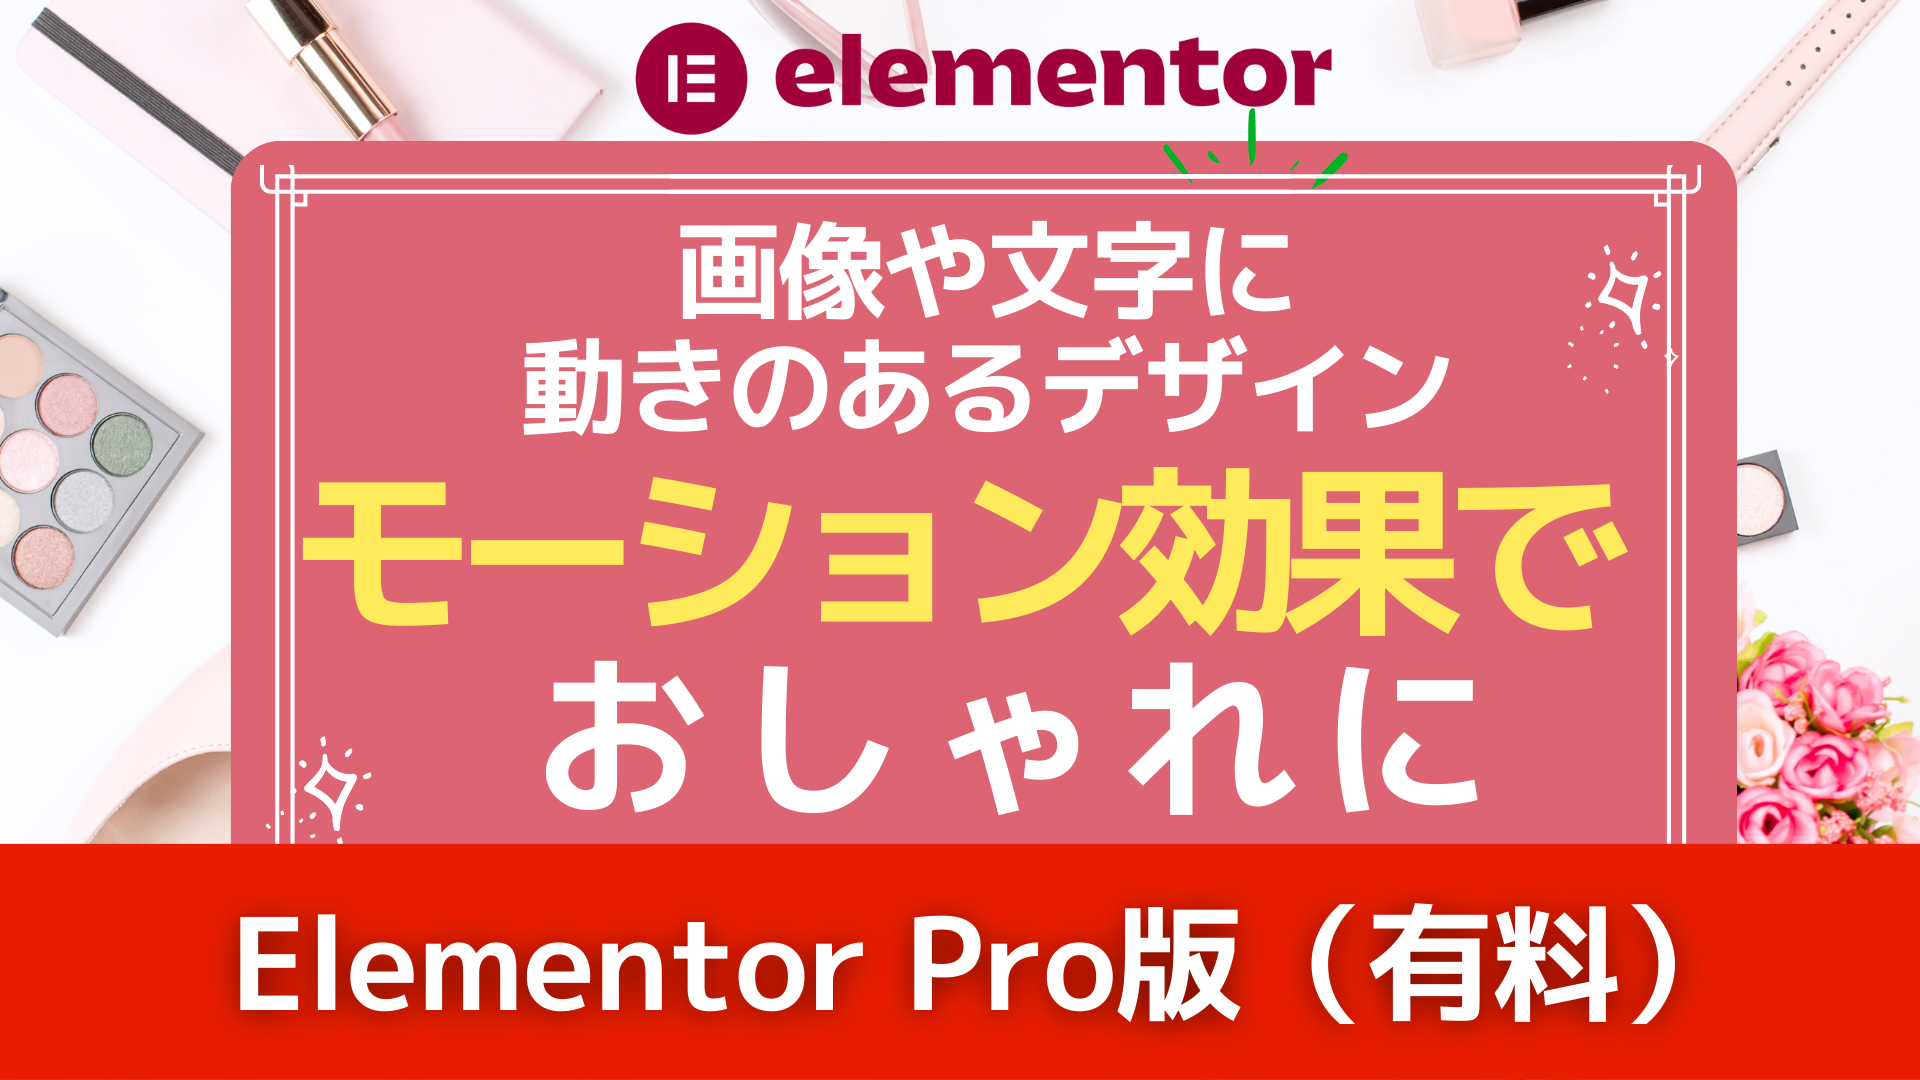 【Elementor Pro】モーション効果でおしゃれに～画像や文字に動きのあるデザイン～